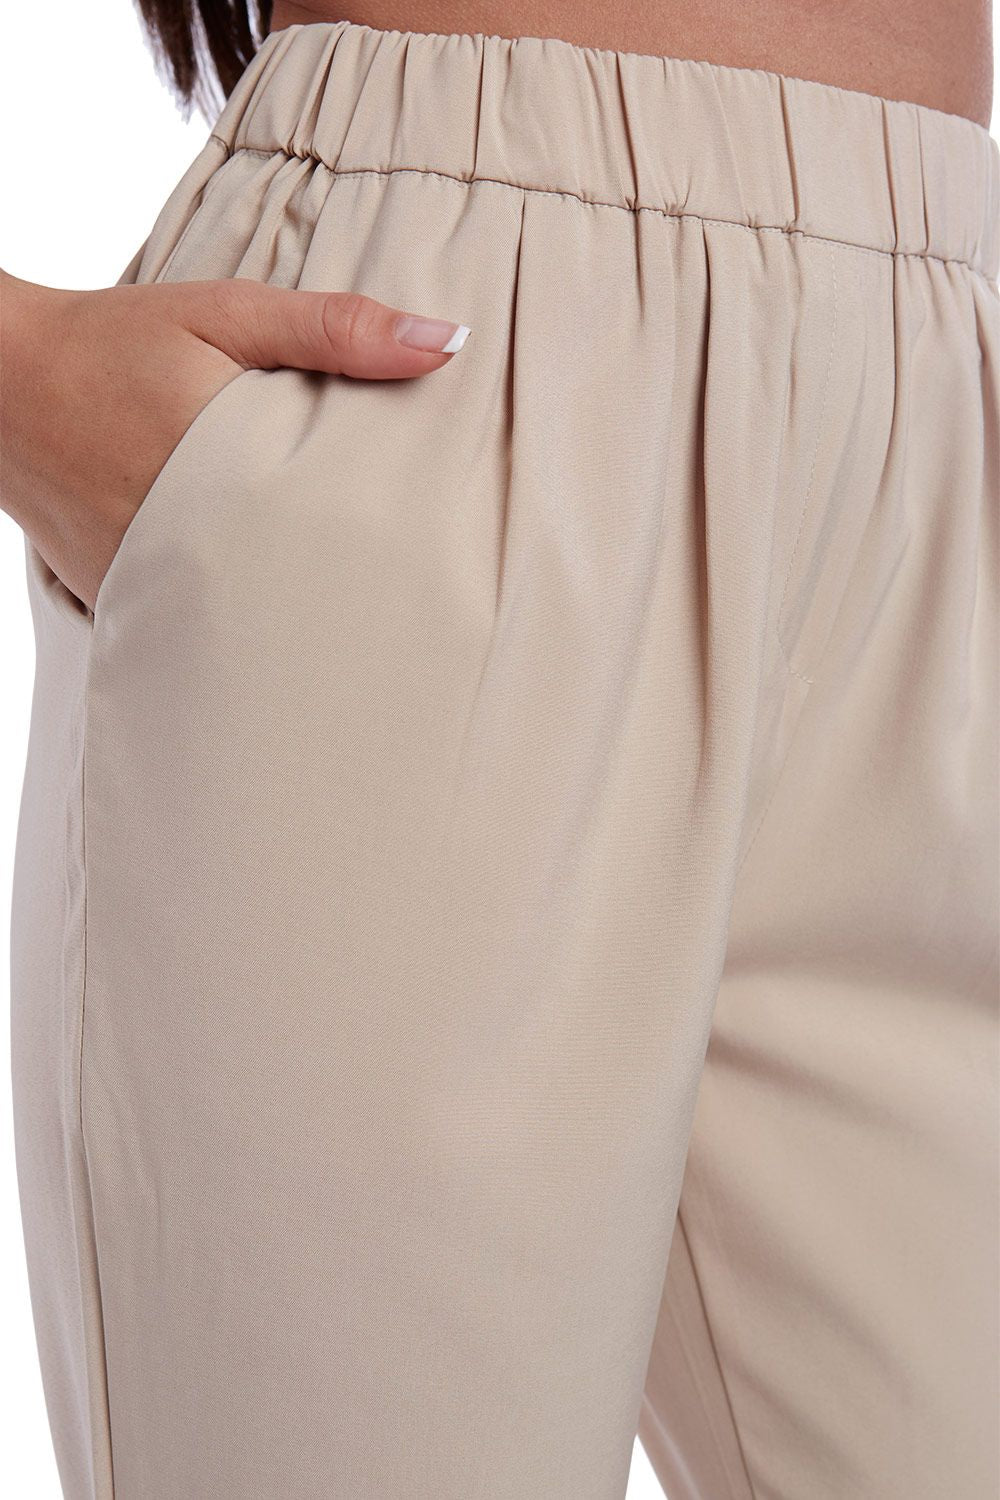 Beige broek met hoge taille en rechte pijp